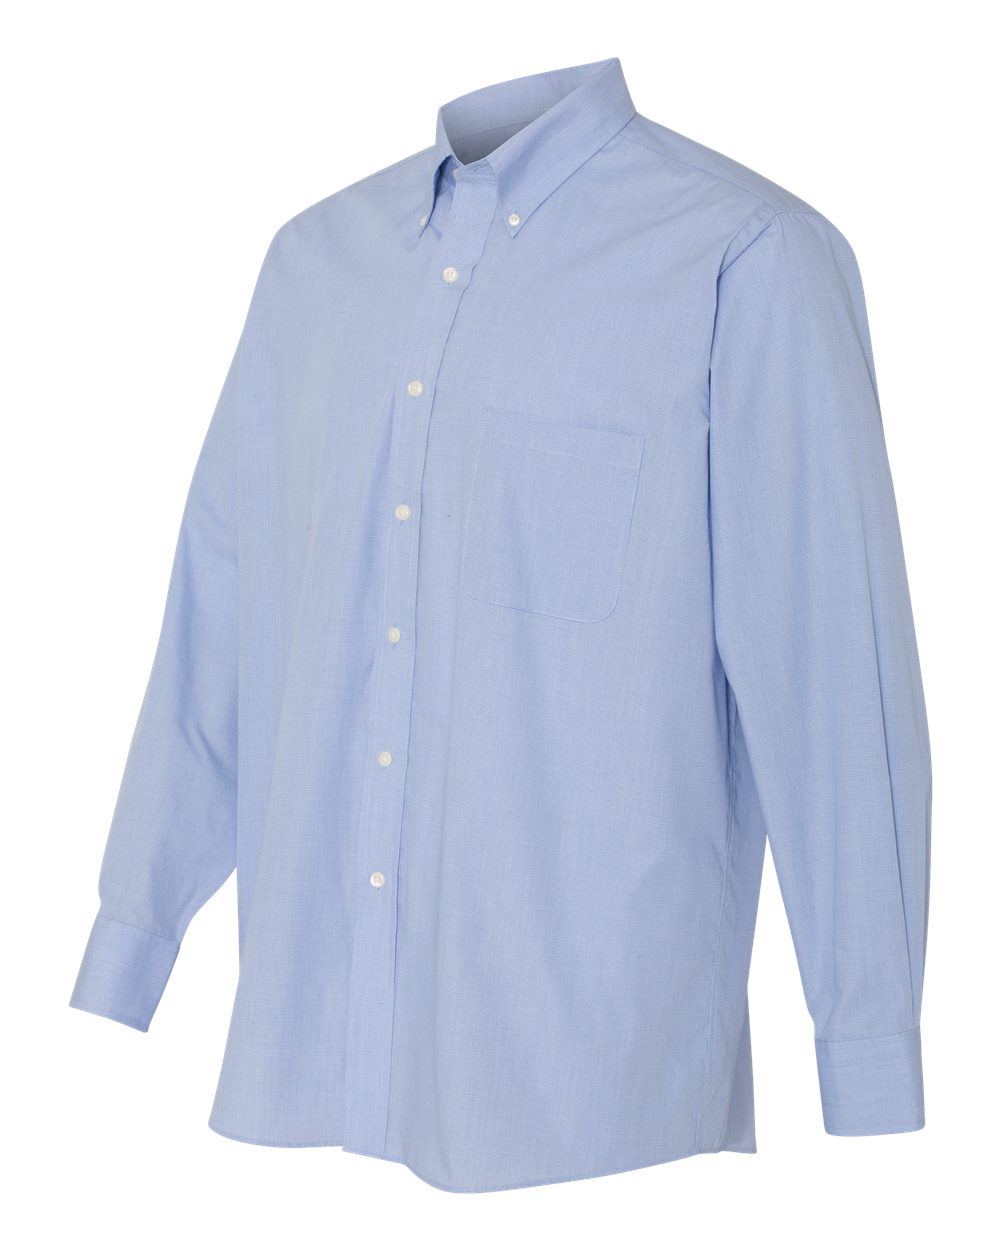 Van Heusen 13V0426 - Yarn Dyed Mini Check Long Sleeve Shirt